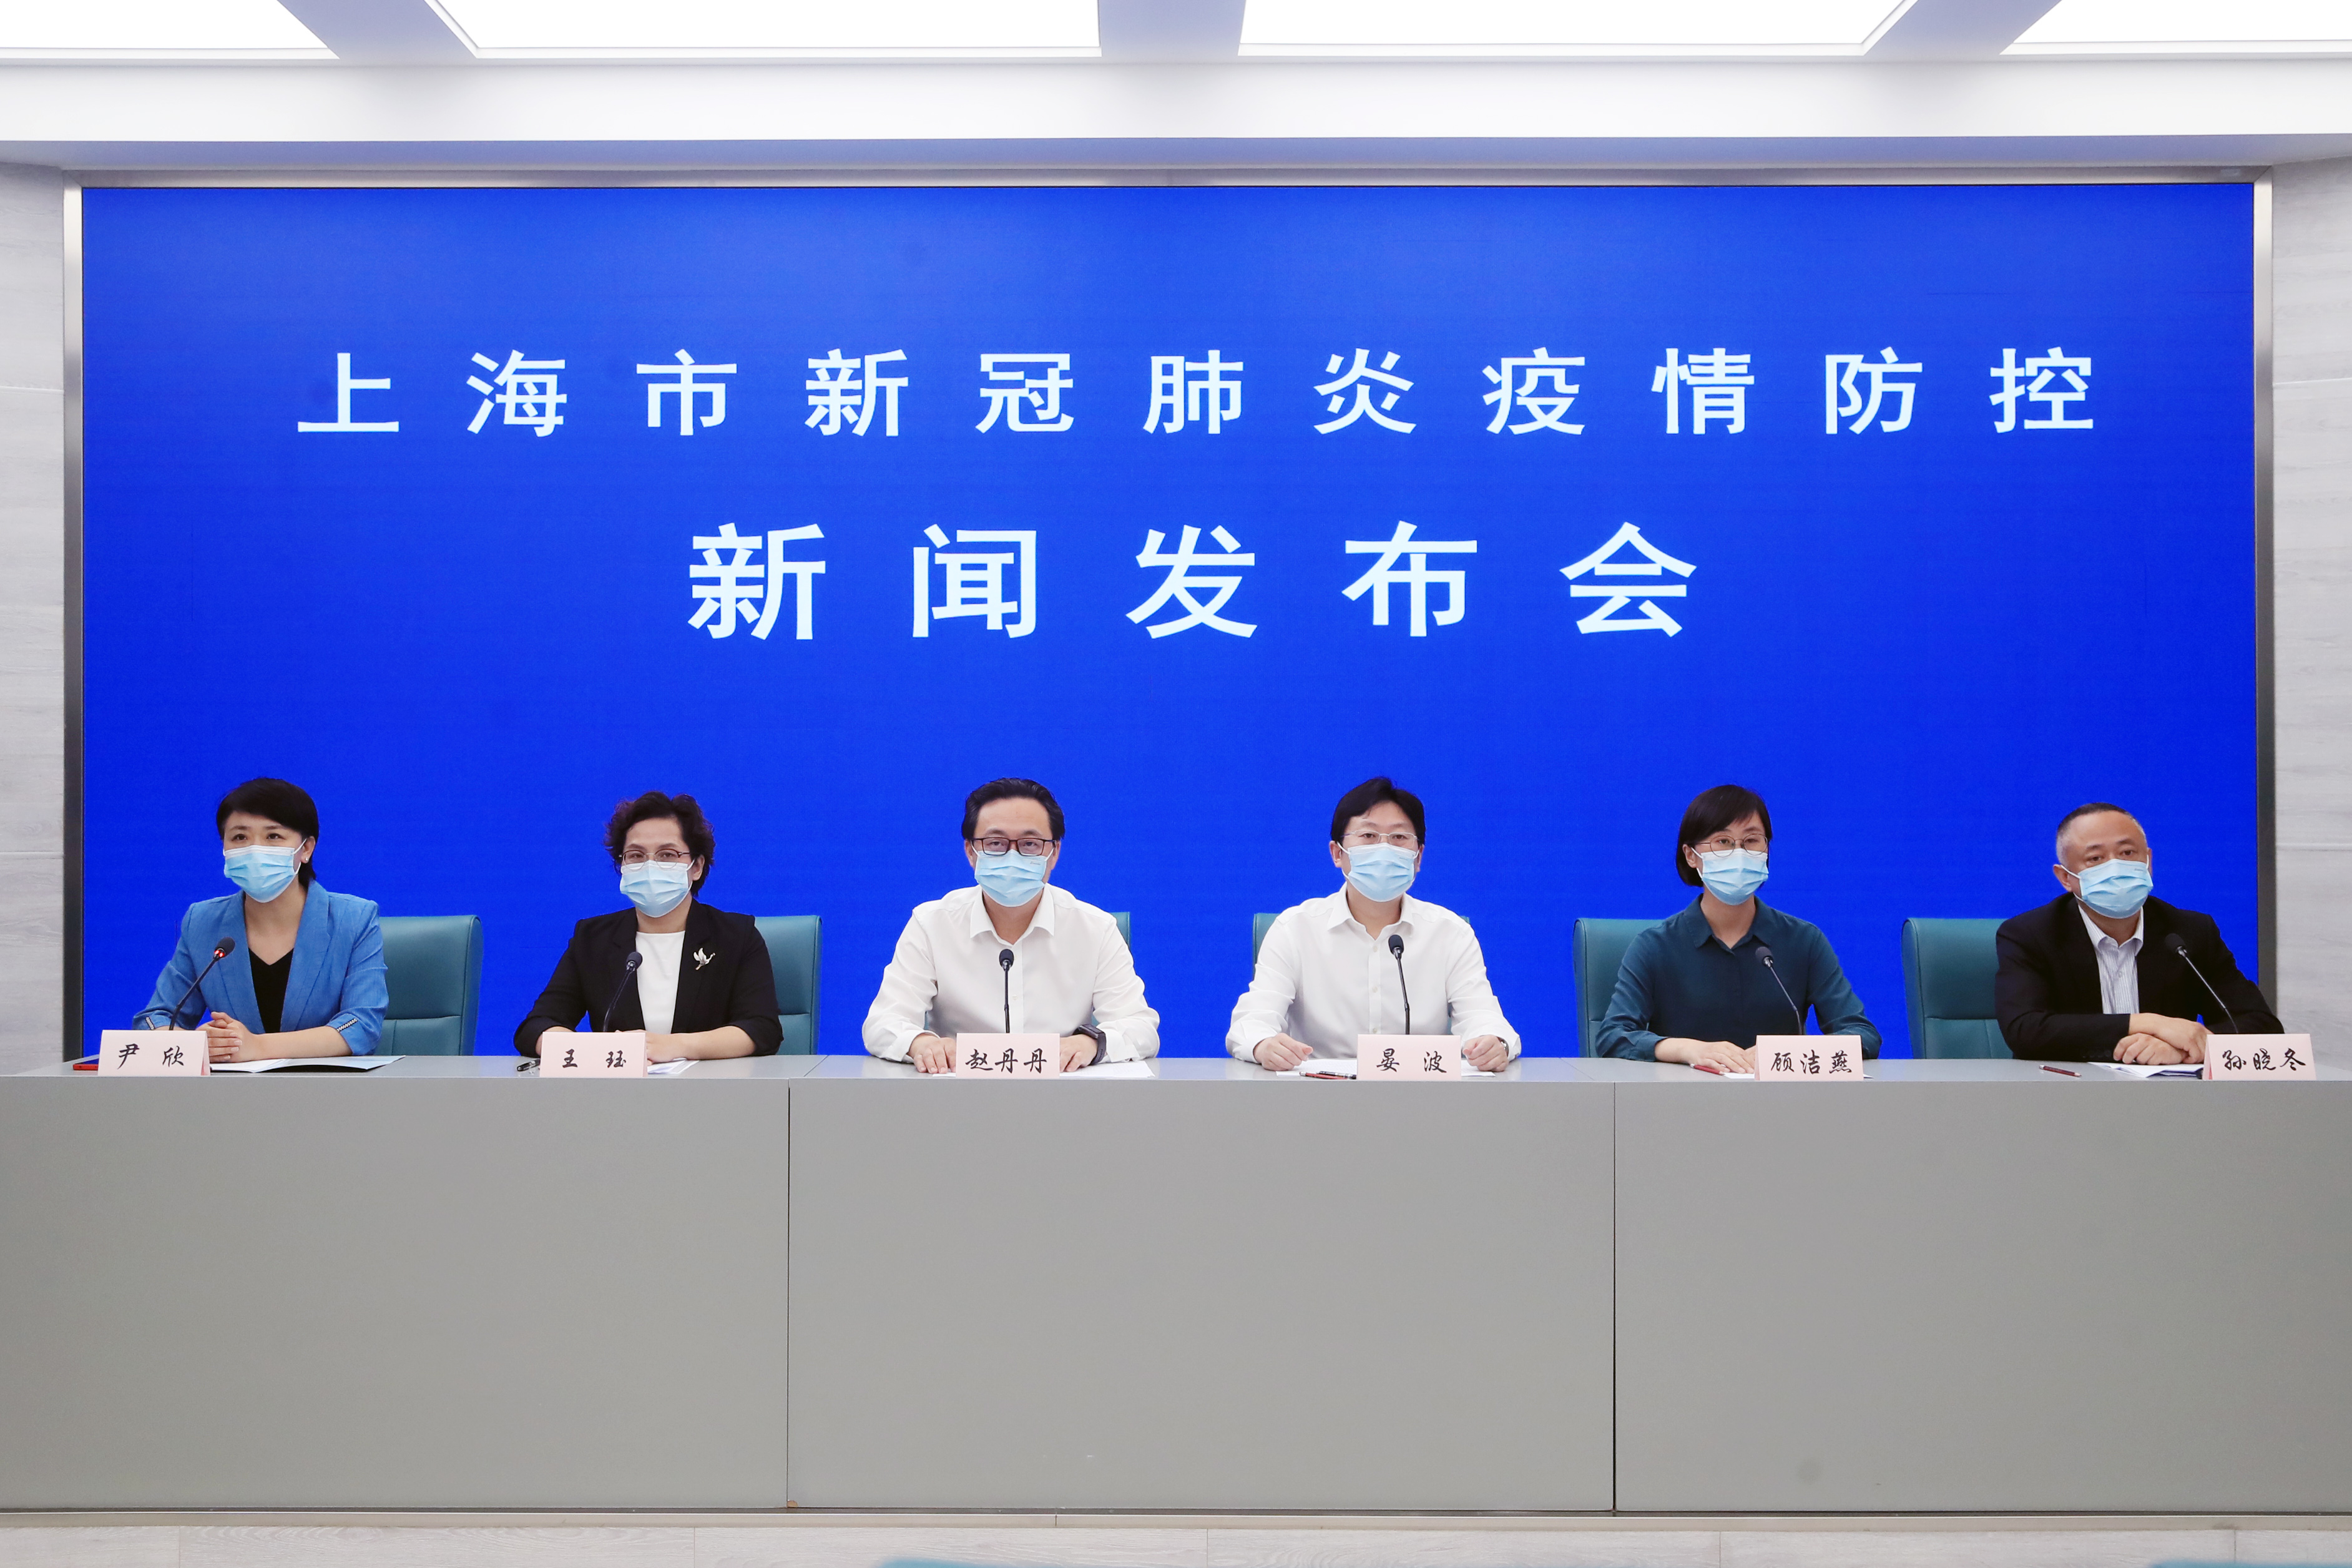 7月25日上海通报新冠肺炎防控情况